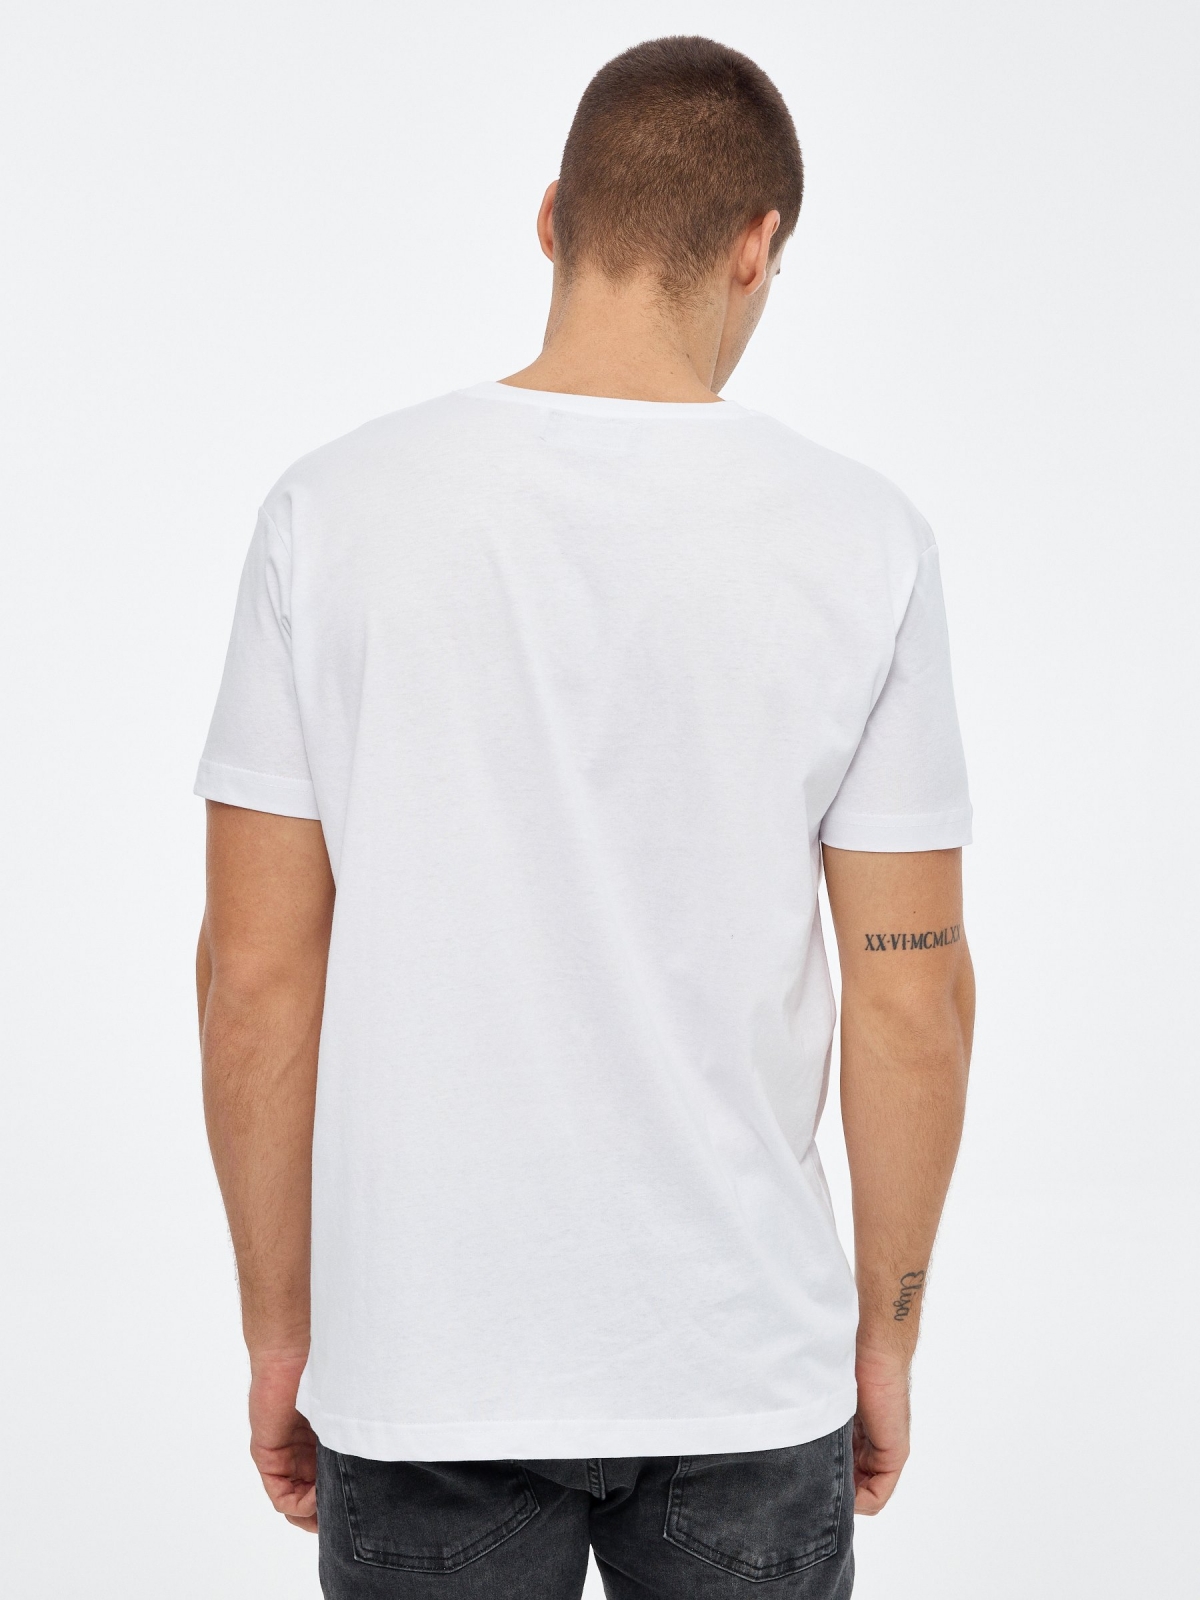 Camiseta estampado calavera blanco vista media trasera